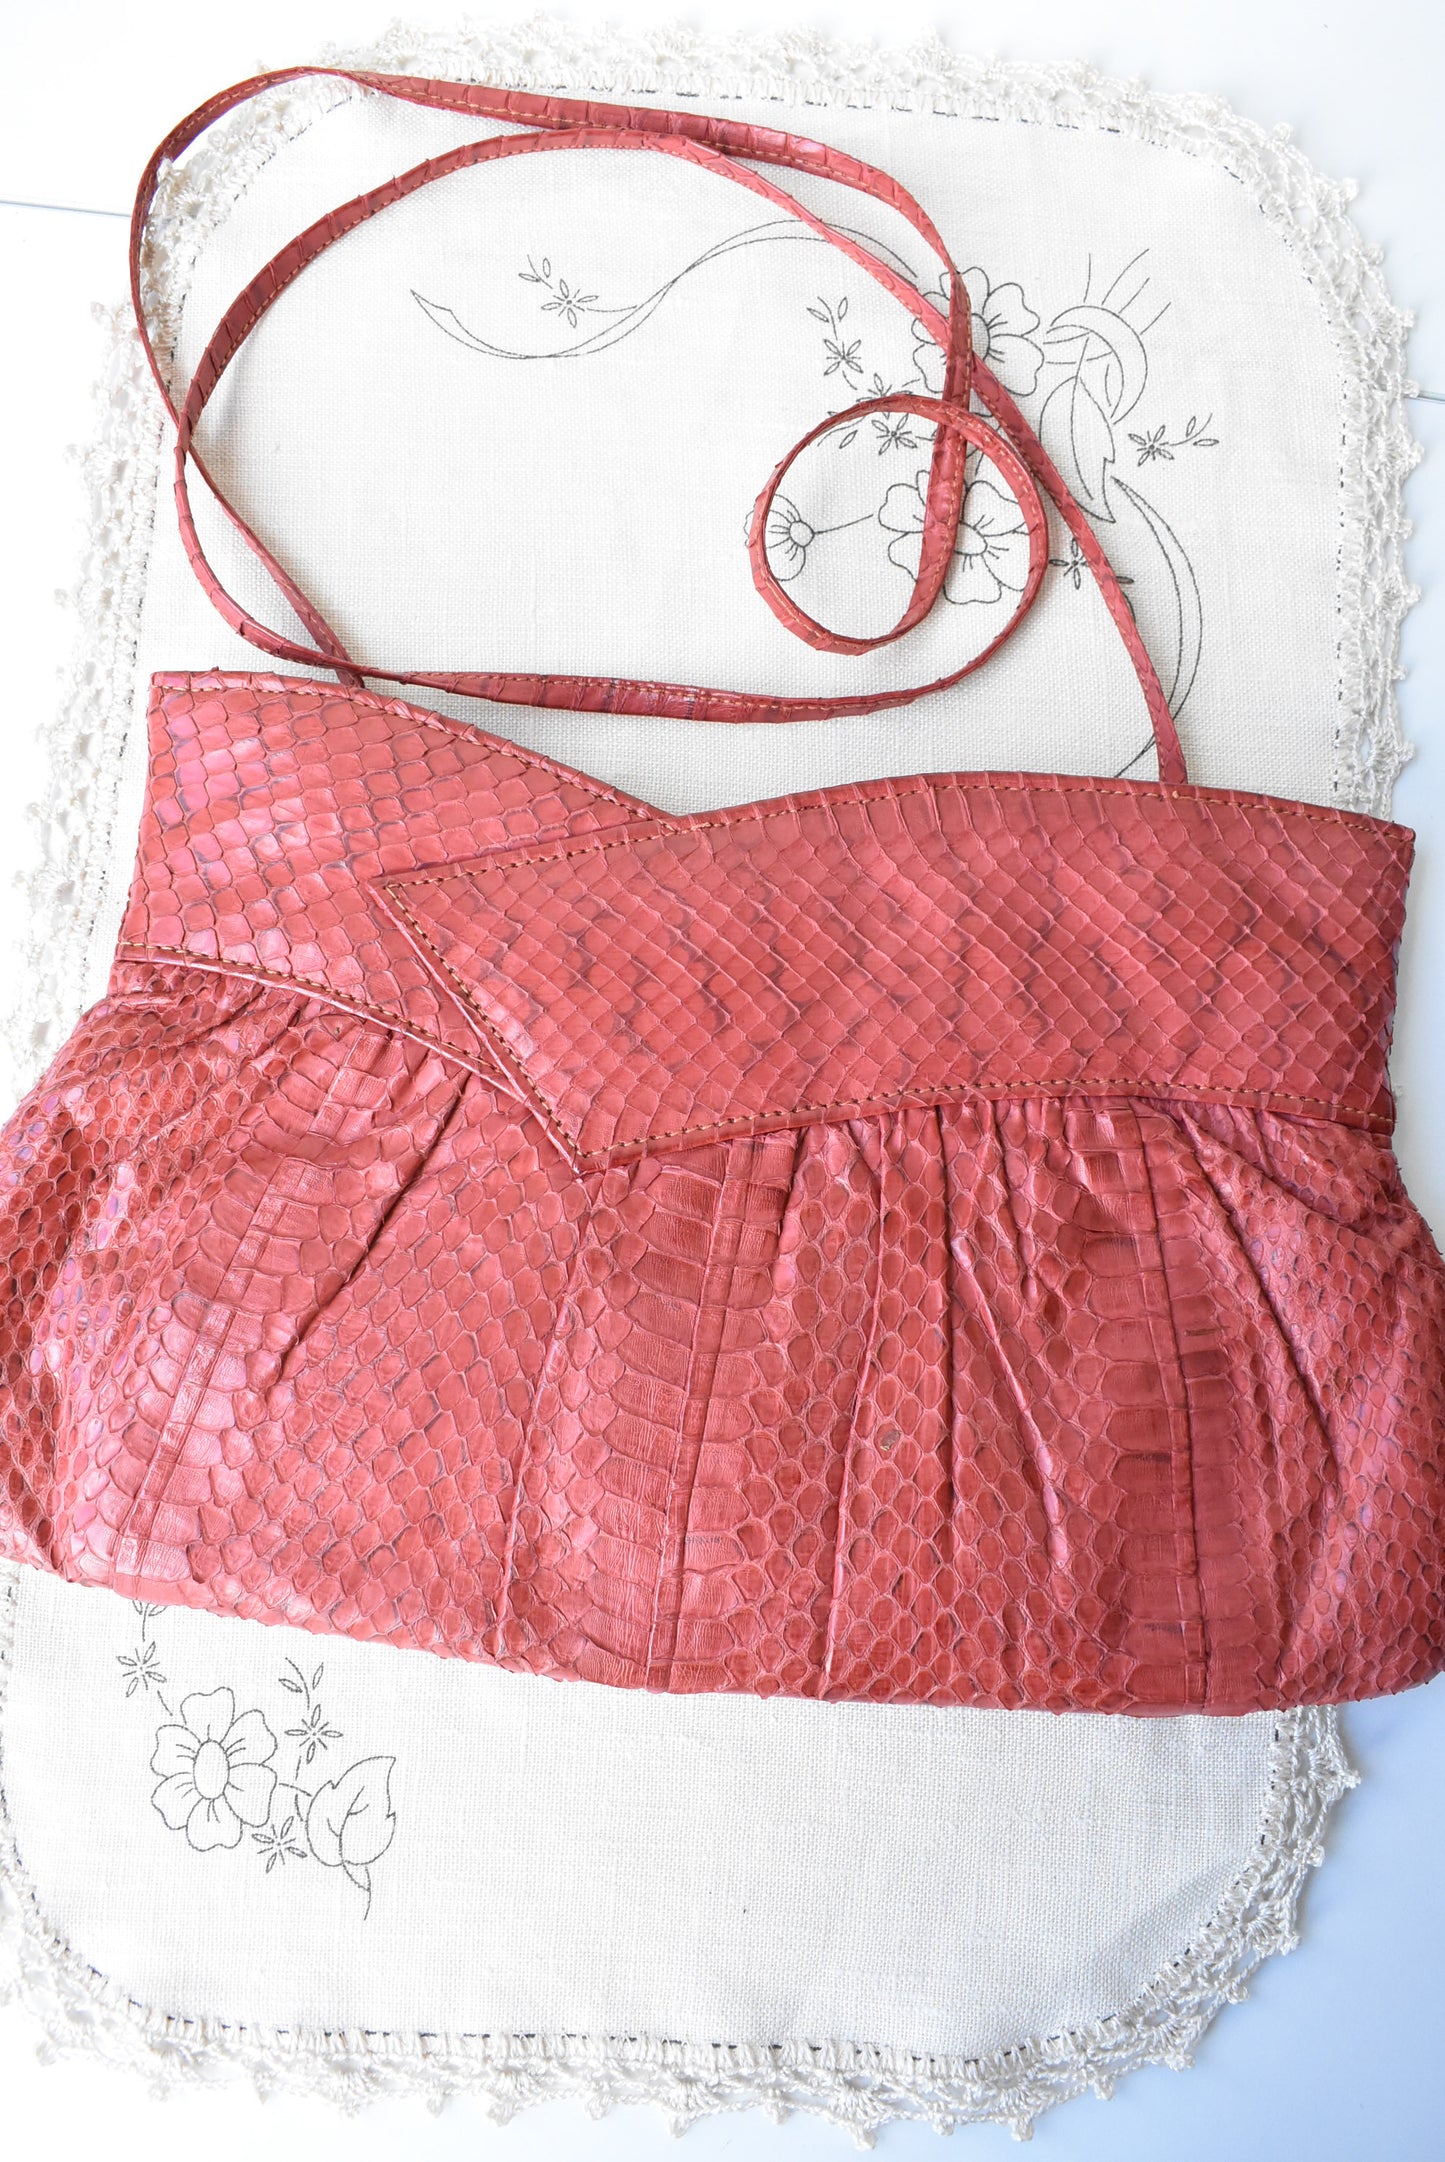 Vintage red leather shoulder bag